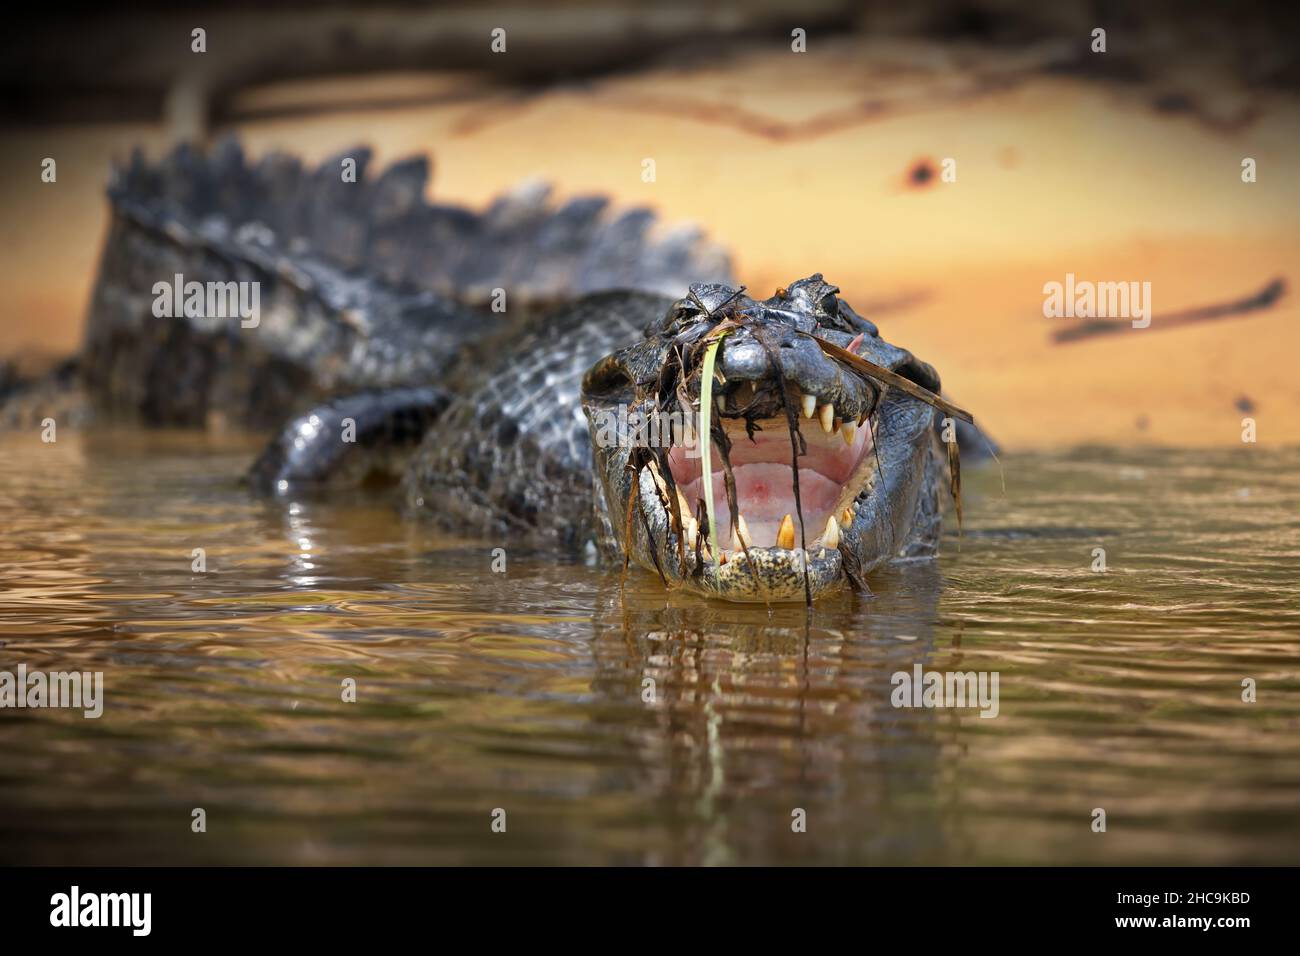 Aufnahme eines Krokodilkrokodils mit flachem Fokus, das in die Kamera blickt und den Mund öffnet Stockfoto